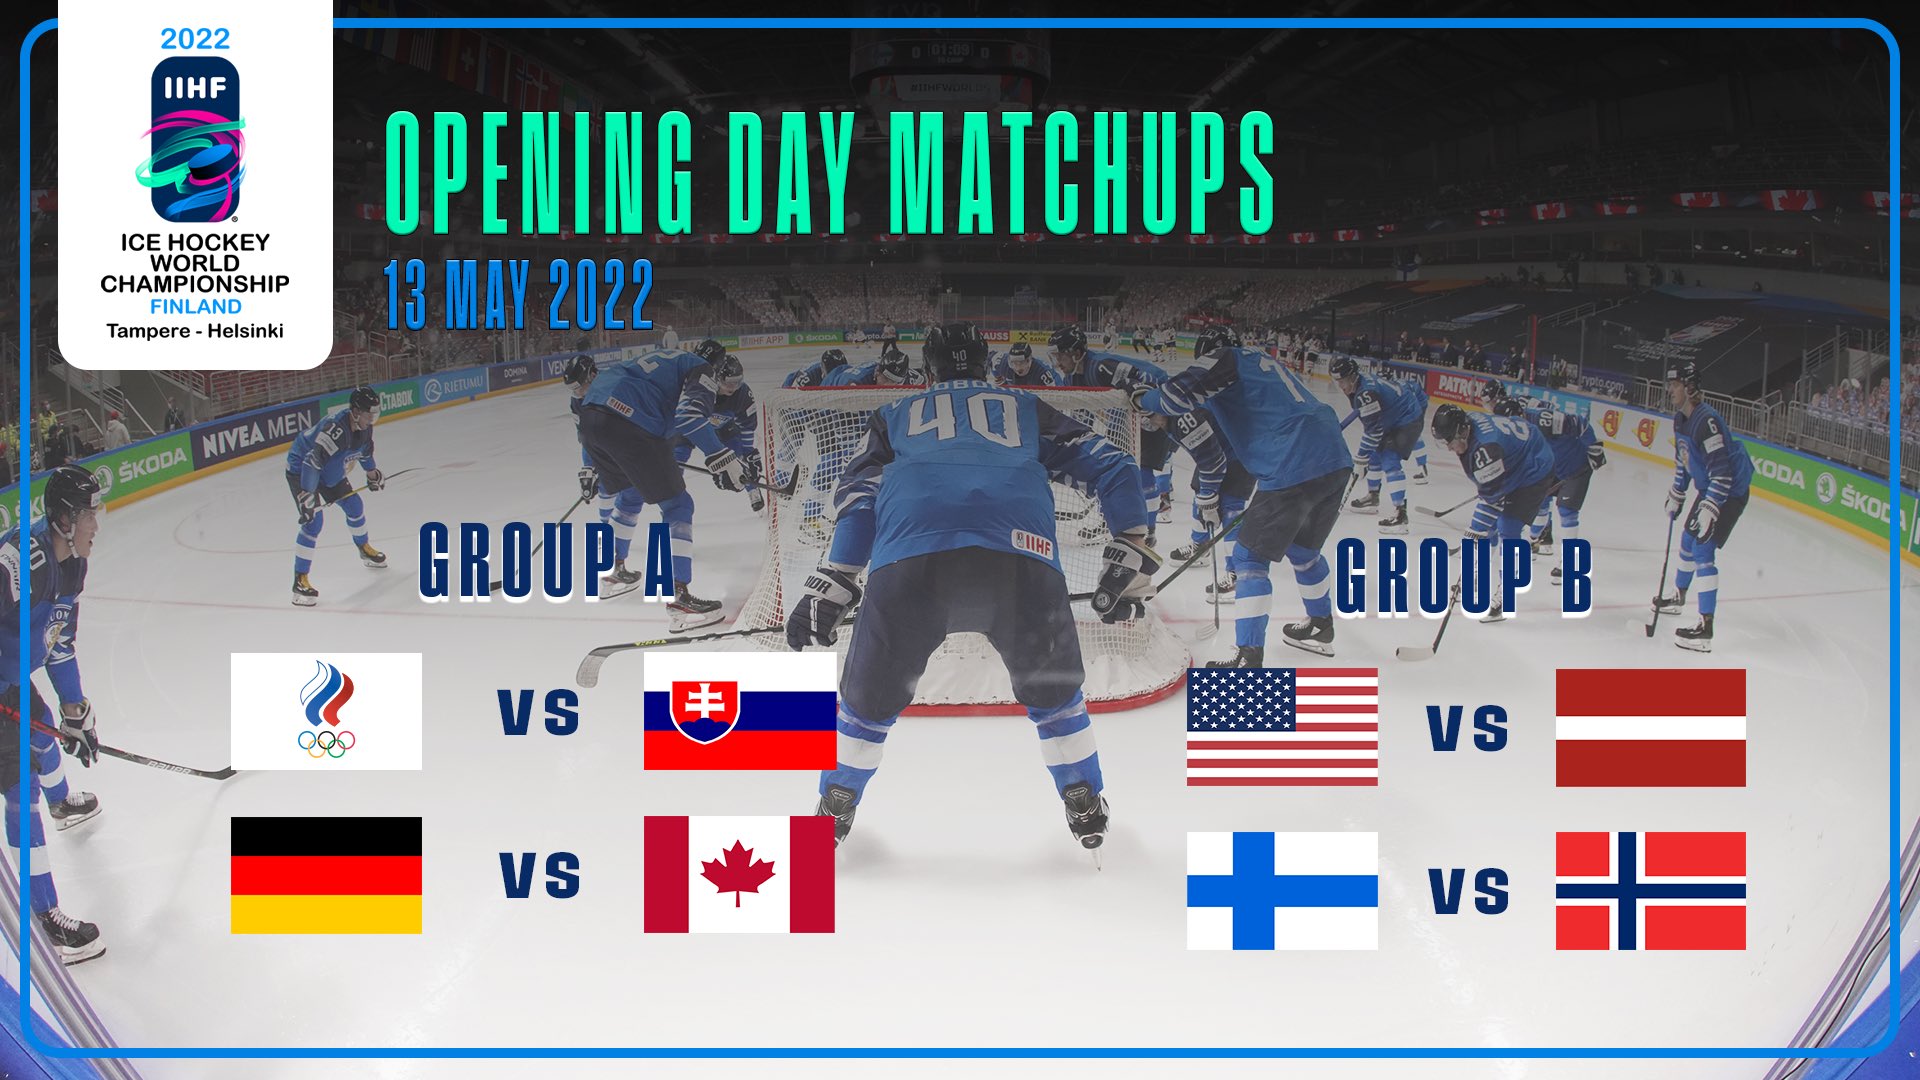 Iihf 2022 Schedule Iihf On Twitter: "Hockey On The Mind? The 2022 #Iihfworlds In Finland Kicks  Off 13 May With @Russiahockey, @Hockeyslovakia, @Deb_Teams, @Hockeycanada,  @Usahockey, @Lhf_Lv, @Leijonat And @Norskishockey All On The Schedule. Full  Schedule